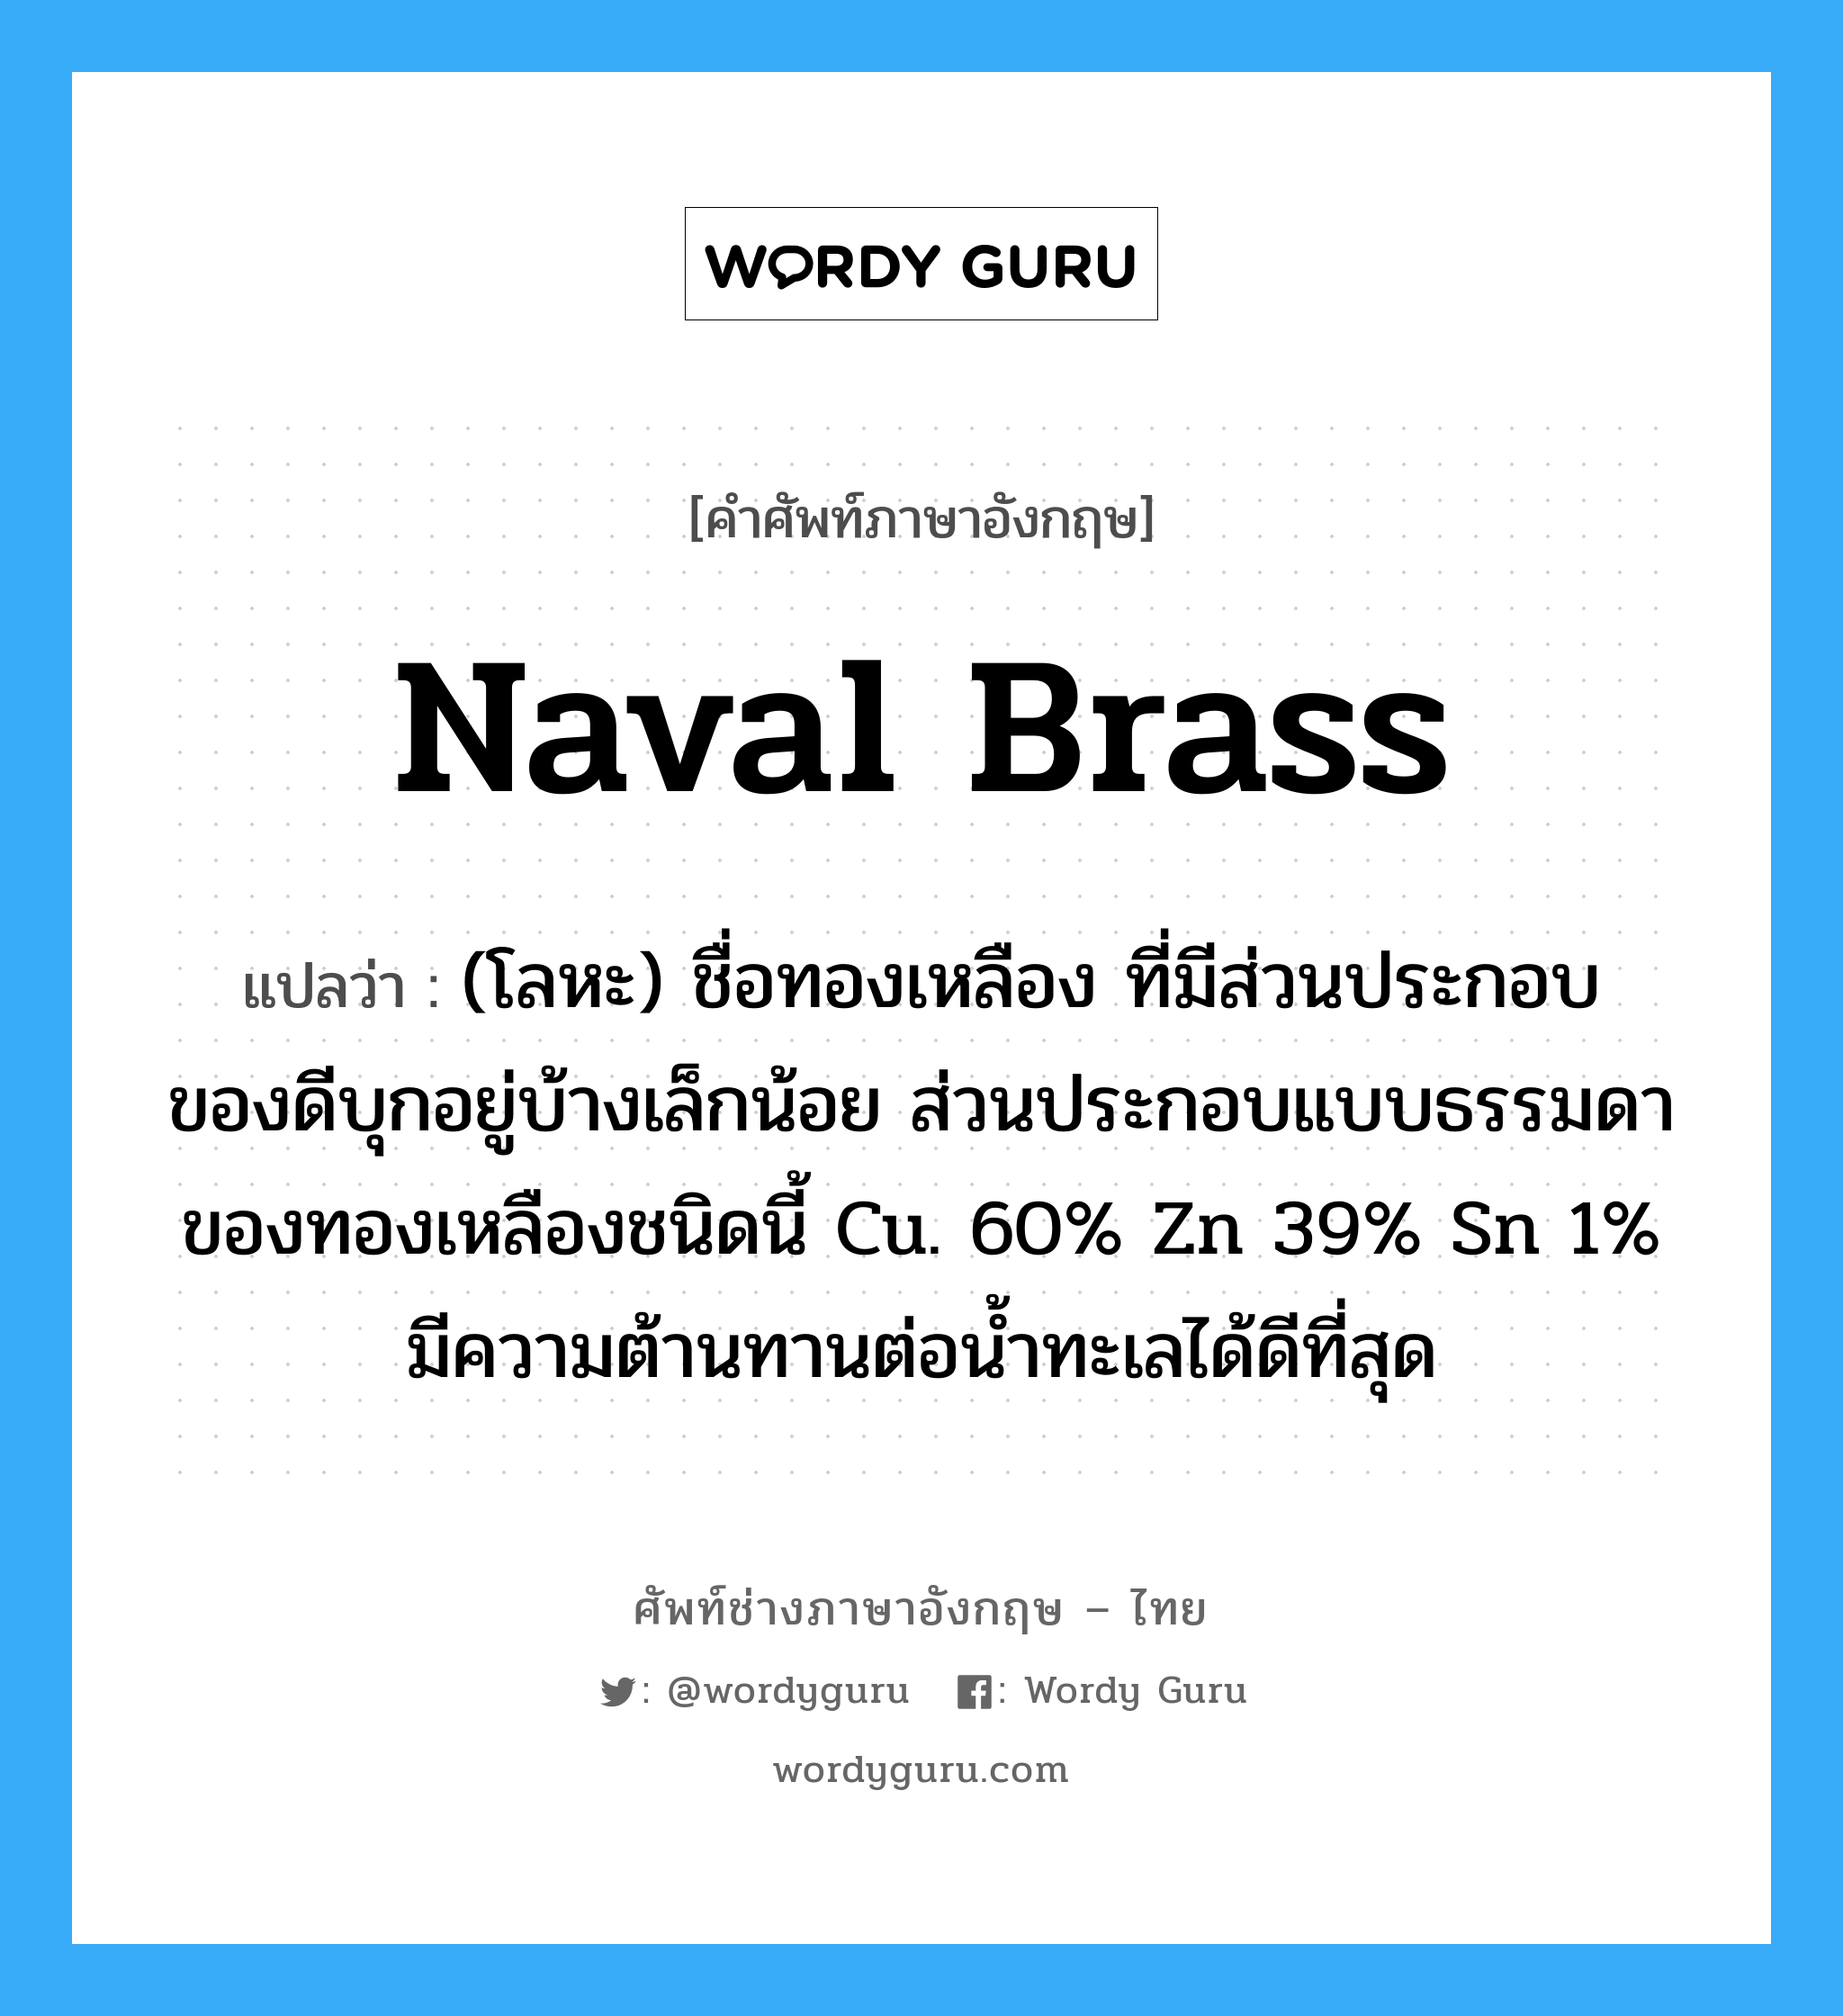 naval brass แปลว่า?, คำศัพท์ช่างภาษาอังกฤษ - ไทย naval brass คำศัพท์ภาษาอังกฤษ naval brass แปลว่า (โลหะ) ชื่อทองเหลือง ที่มีส่วนประกอบของดีบุกอยู่บ้างเล็กน้อย ส่วนประกอบแบบธรรมดา ของทองเหลืองชนิดนี้ Cu. 60% Zn 39% Sn 1% มีความต้านทานต่อน้ำทะเลได้ดีที่สุด